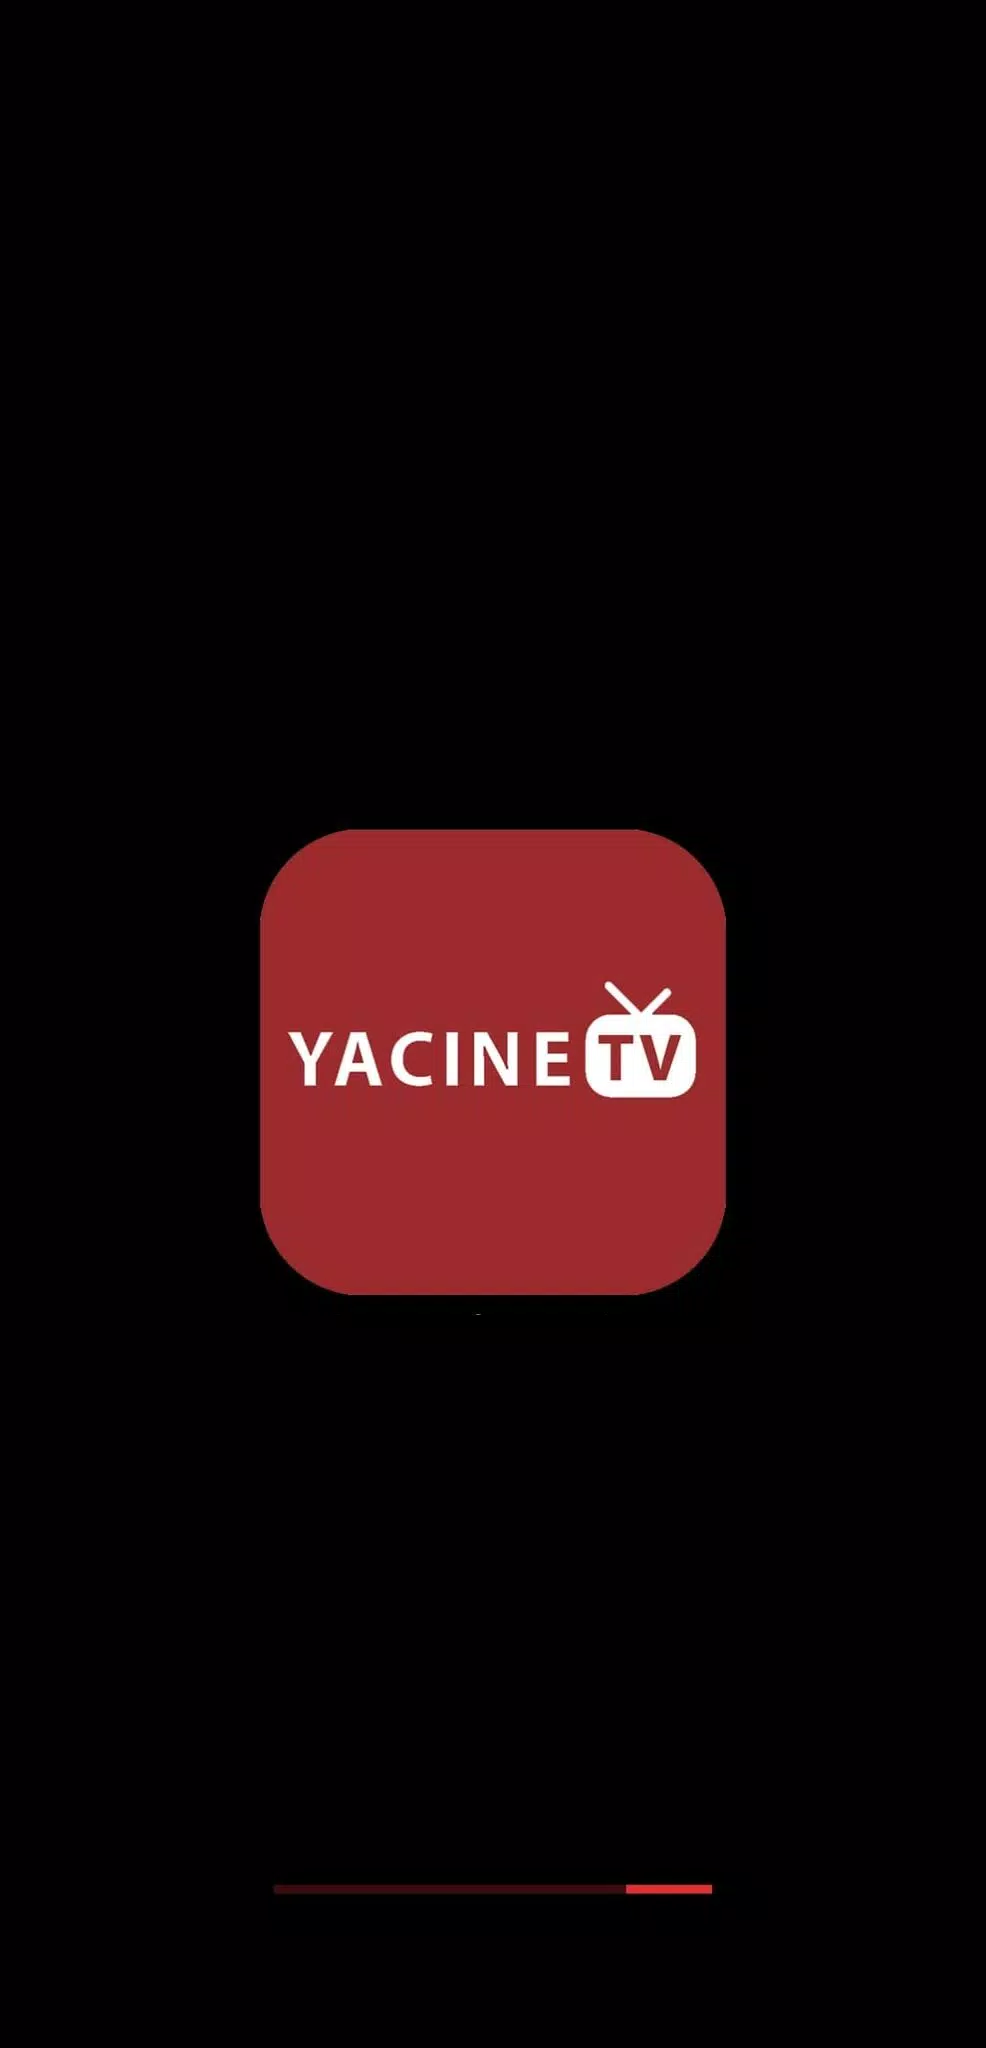 YACINE TV APK pour Android Télécharger